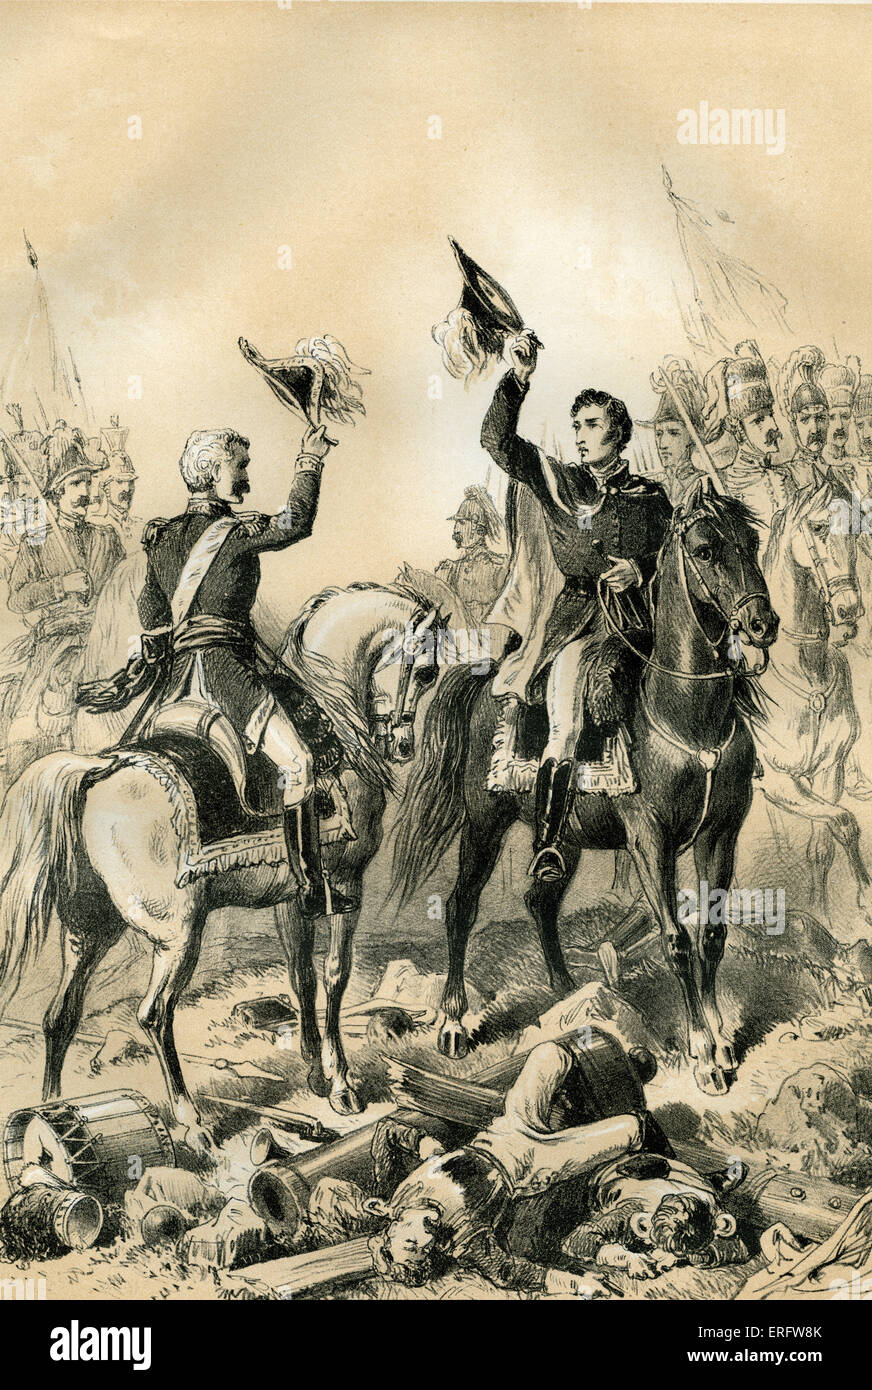 Das Treffen von Wellington und Blücher bei Waterloo. Wellington führte die britische Armee und Blücher führte die preußische Armee gegen die Franzosen Stockfoto